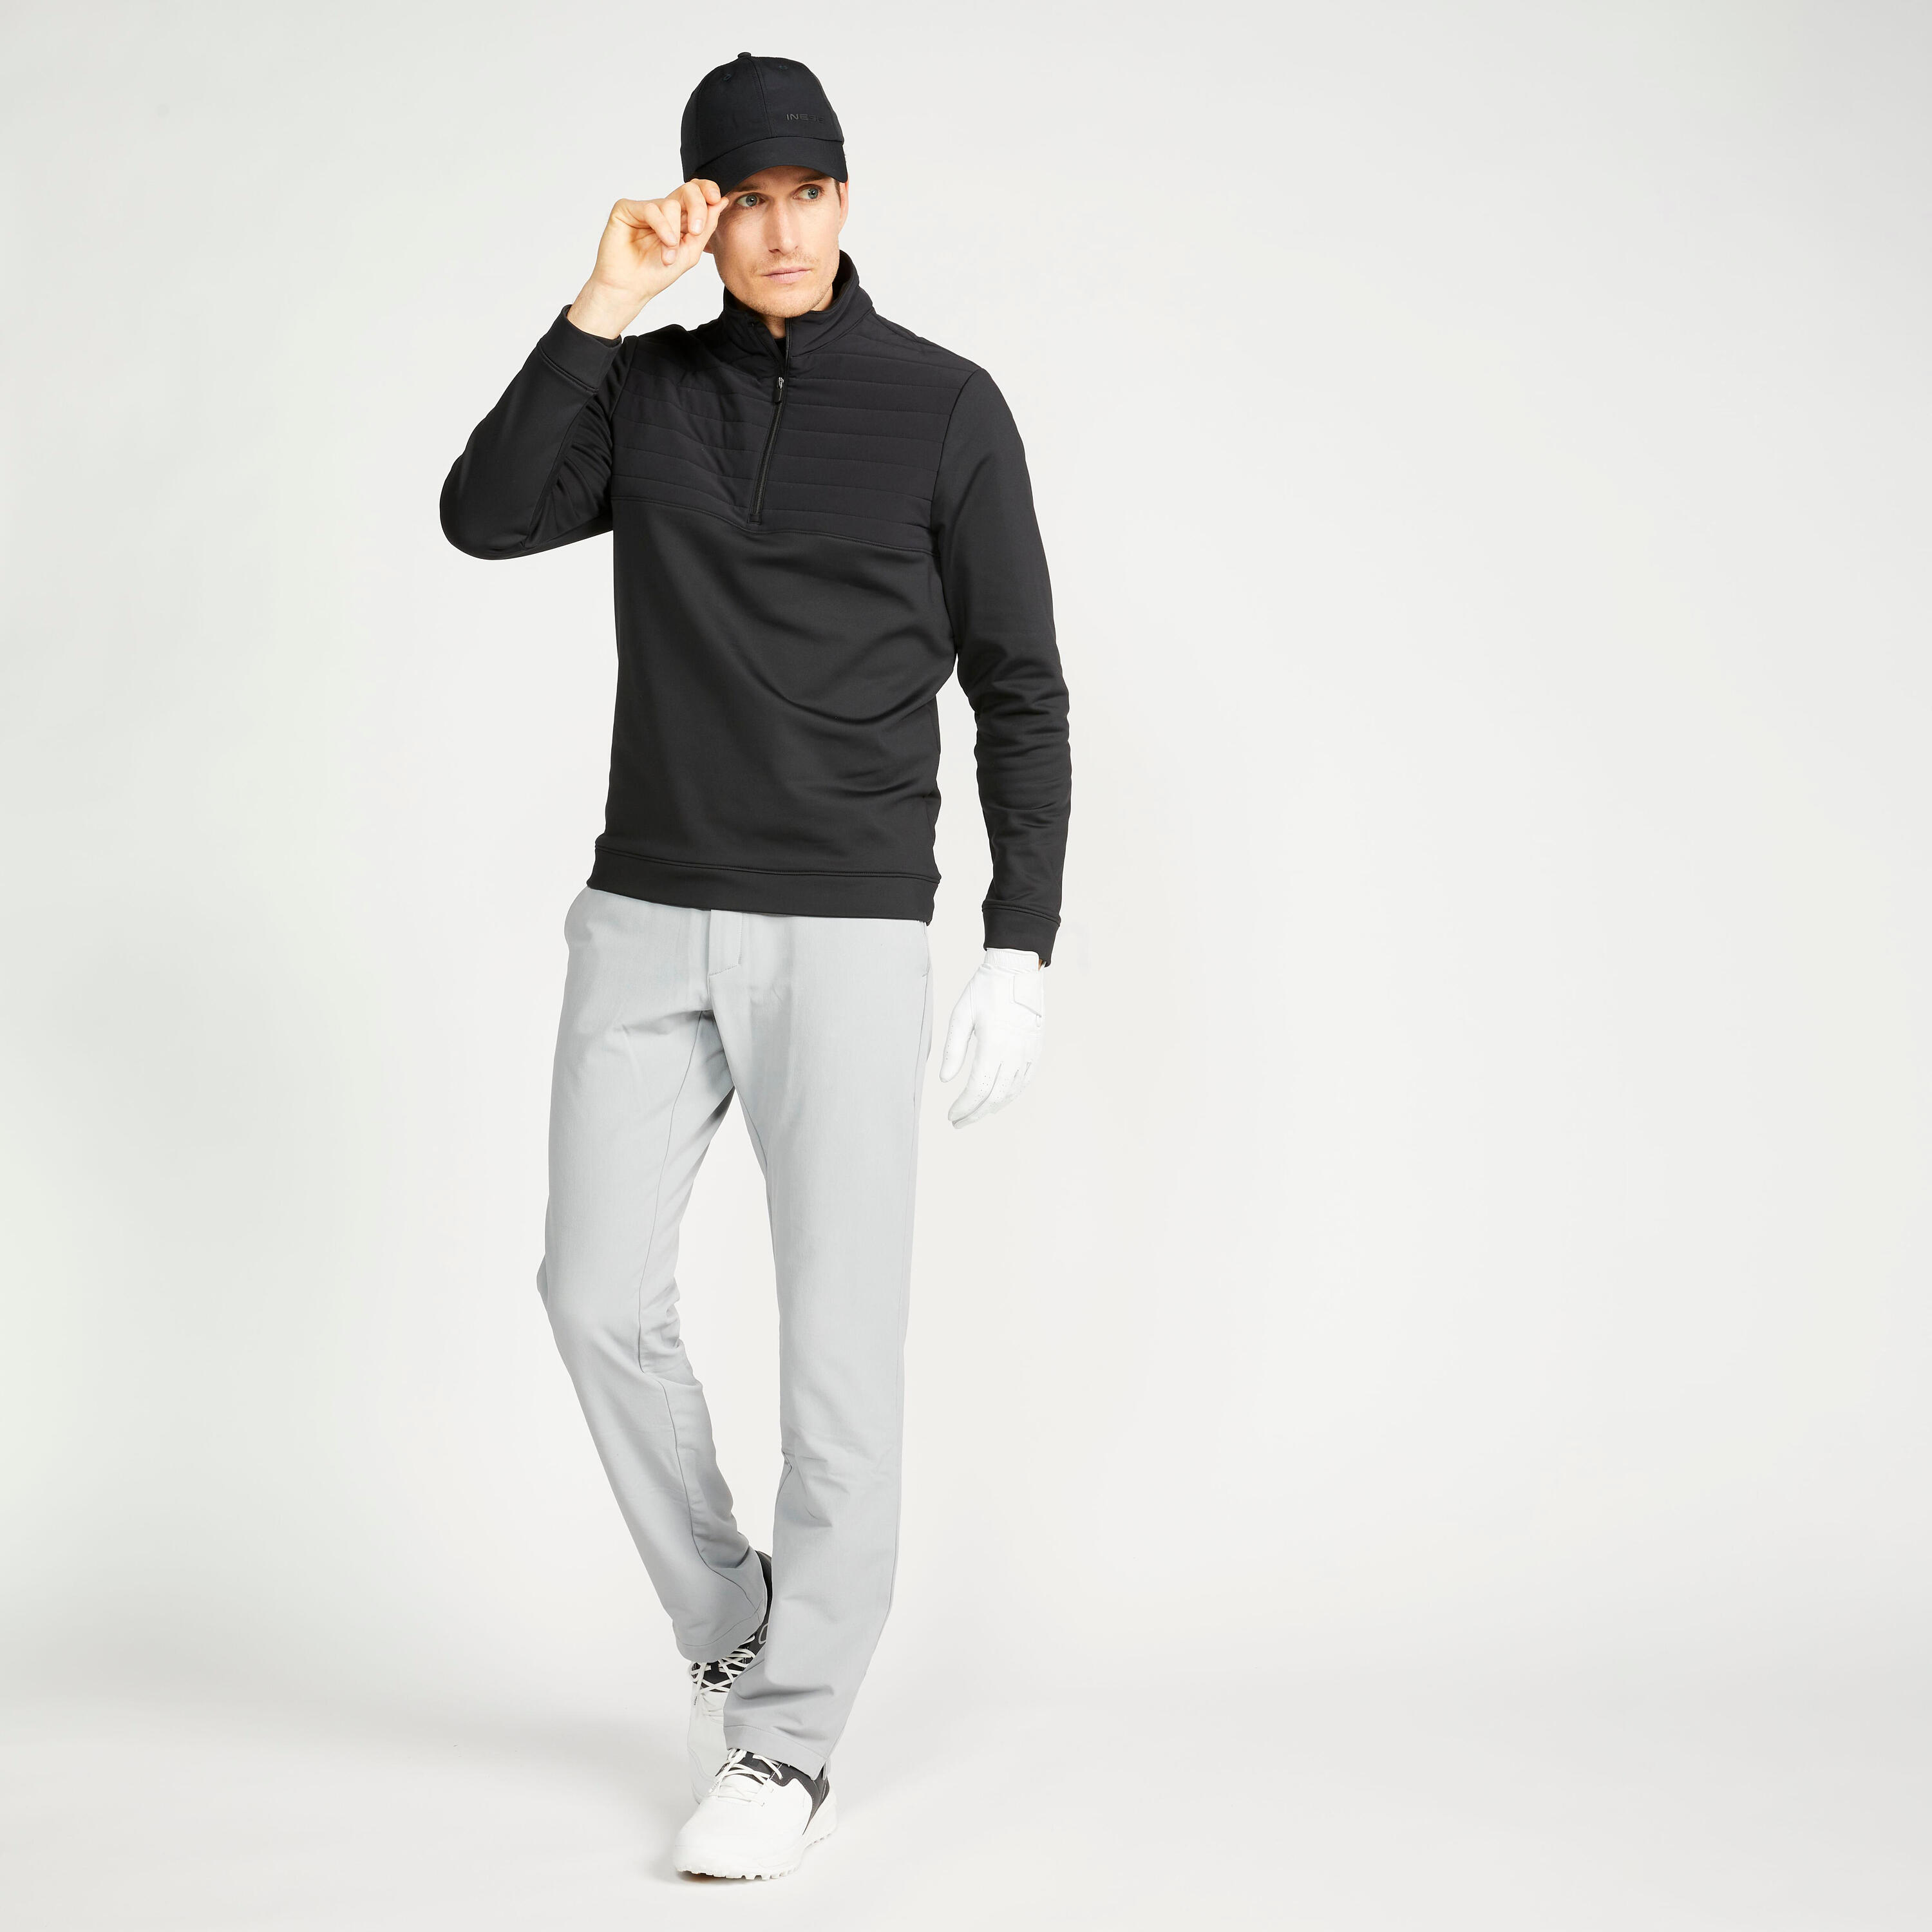 Men's golf sweatshirt - CW500 black 2/5